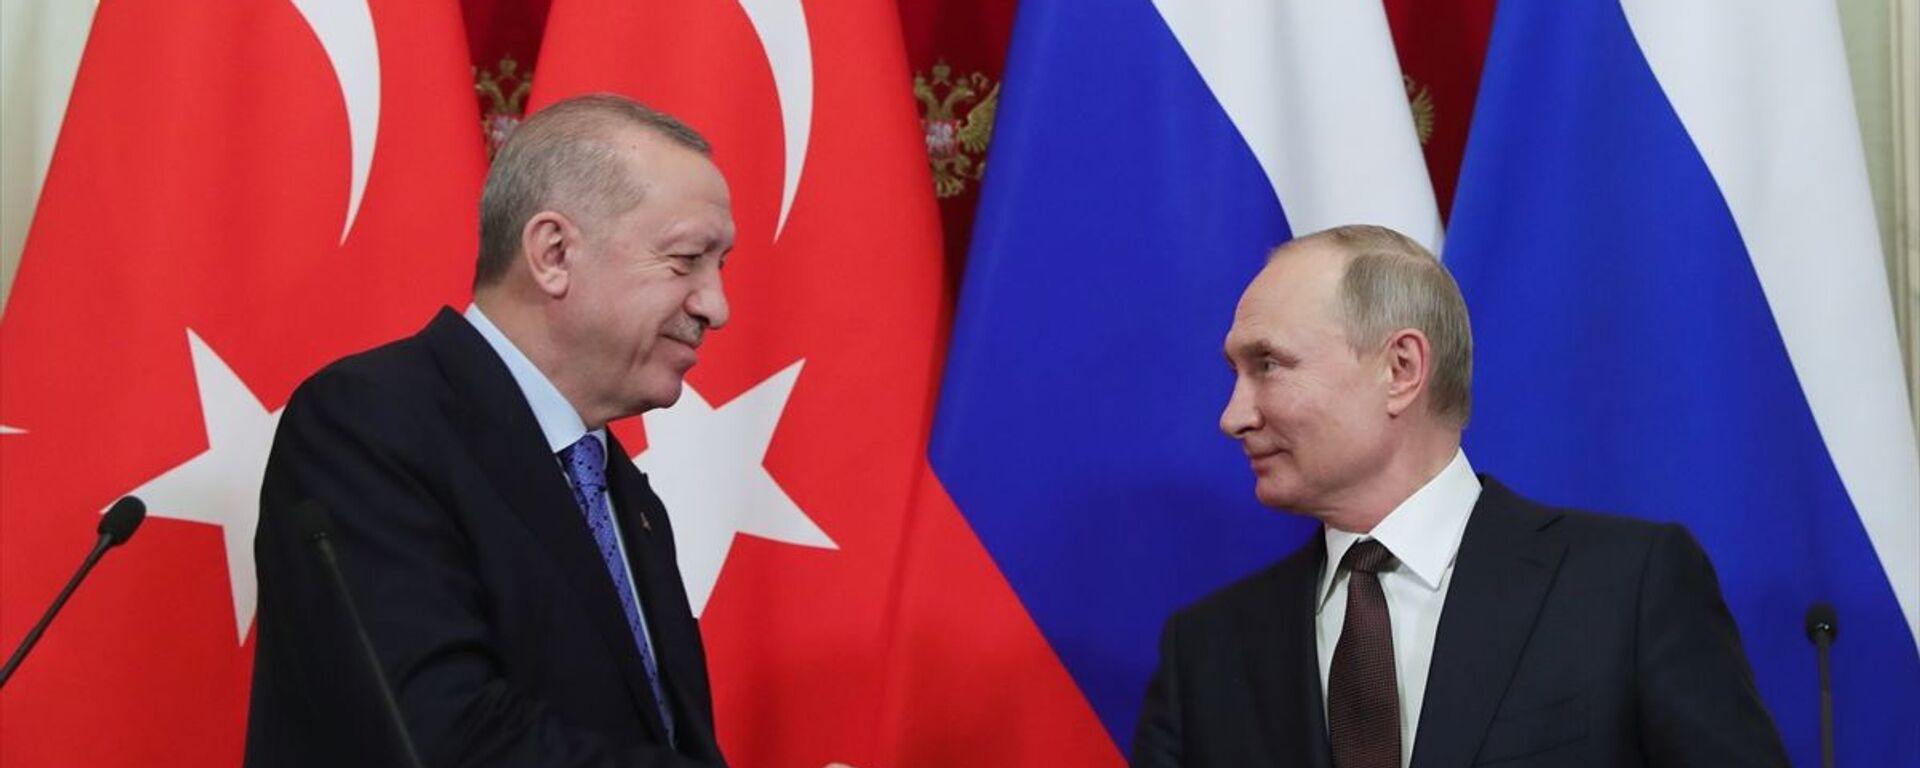 Türkiye Cumhurbaşkanı Recep Tayyip Erdoğan ile Rusya Devlet Başkanı Vladimir Putin - Sputnik Türkiye, 1920, 15.12.2021